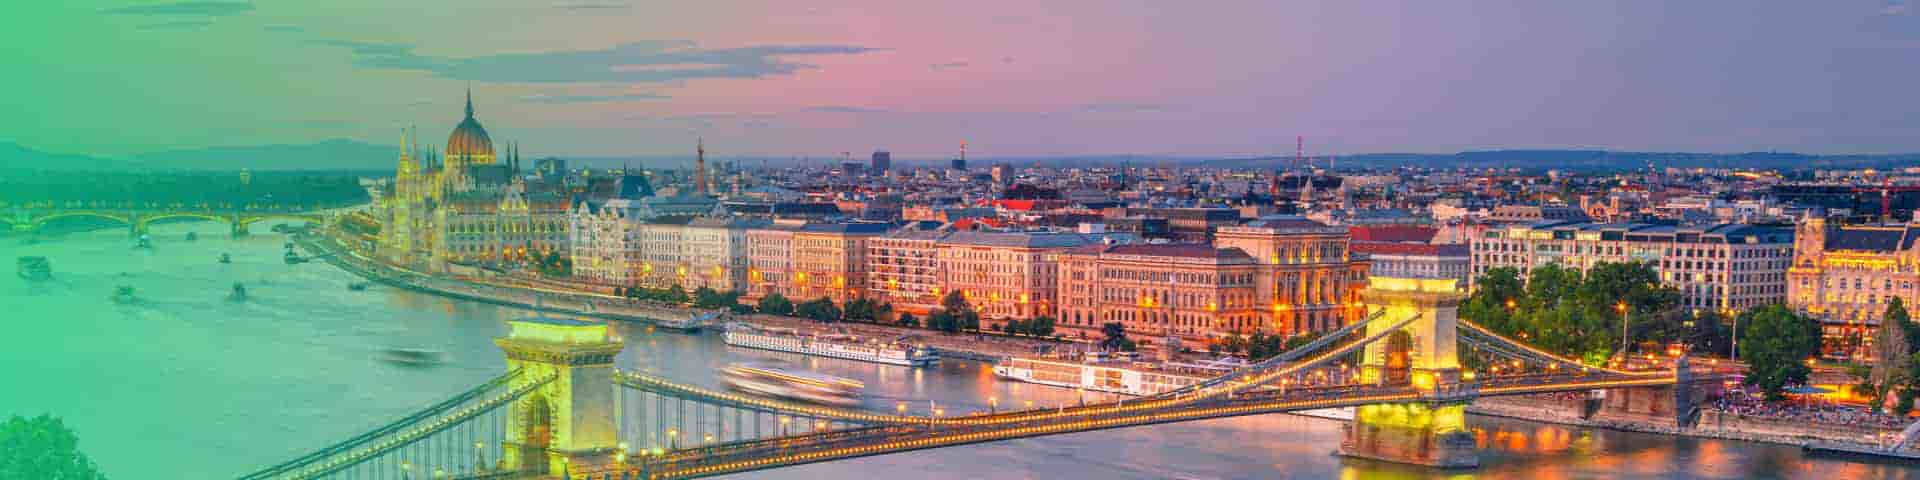 Objevte Maďarsko - to nejlepší místo k odpočinku